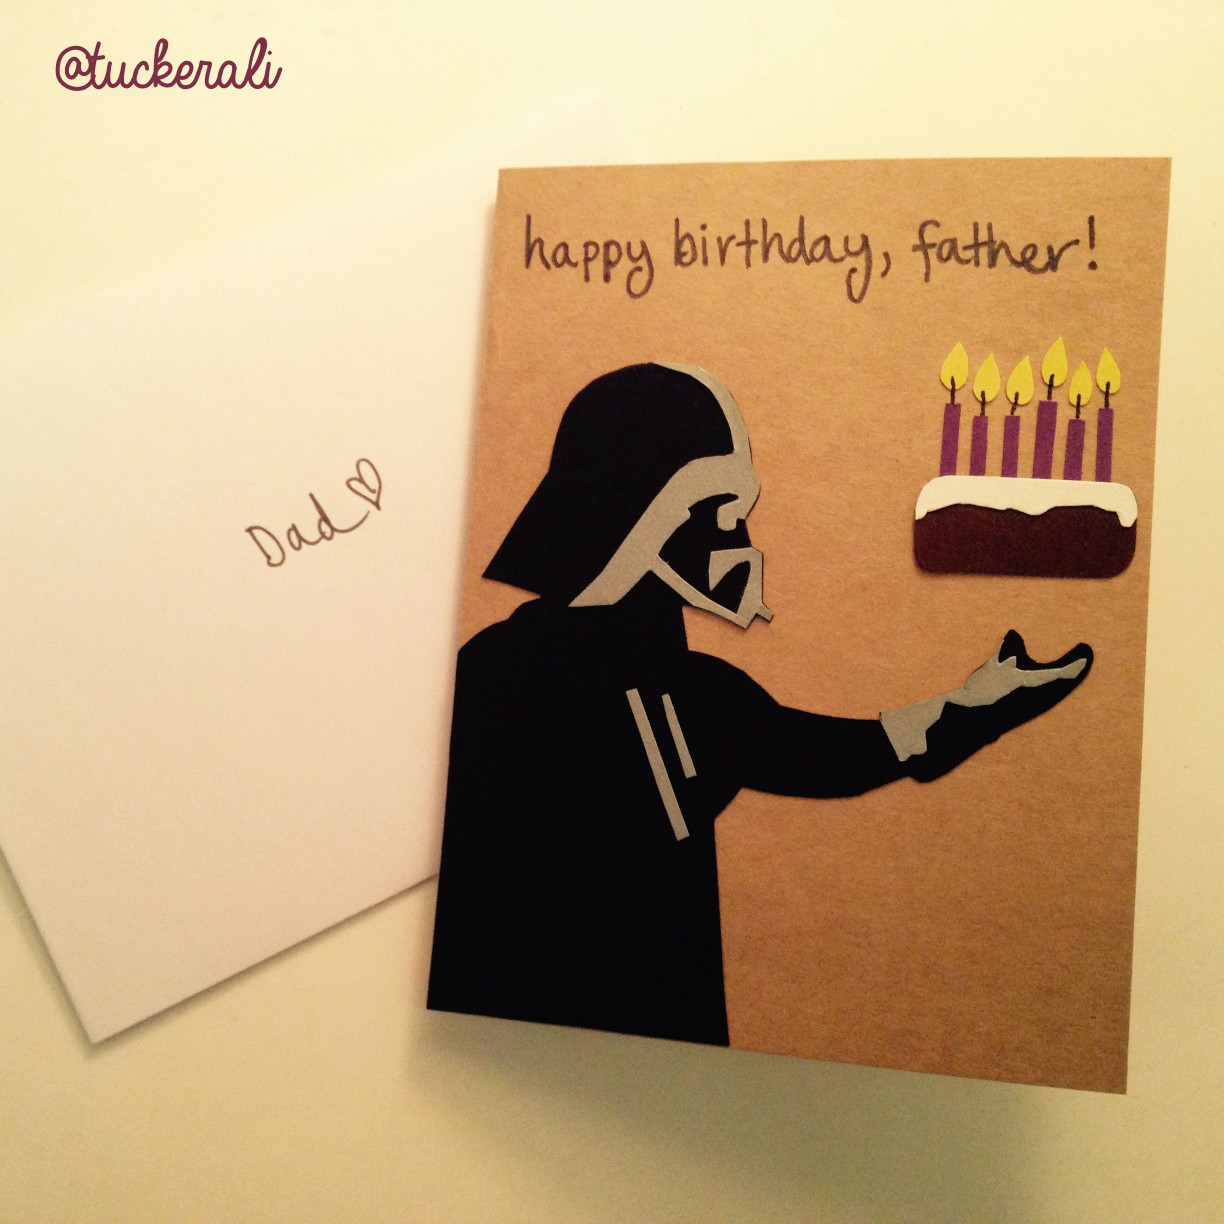 Cute Card Ideas For Birthday Cute Birthday Card Ideas Terrific Best Friend Birthday Card Best